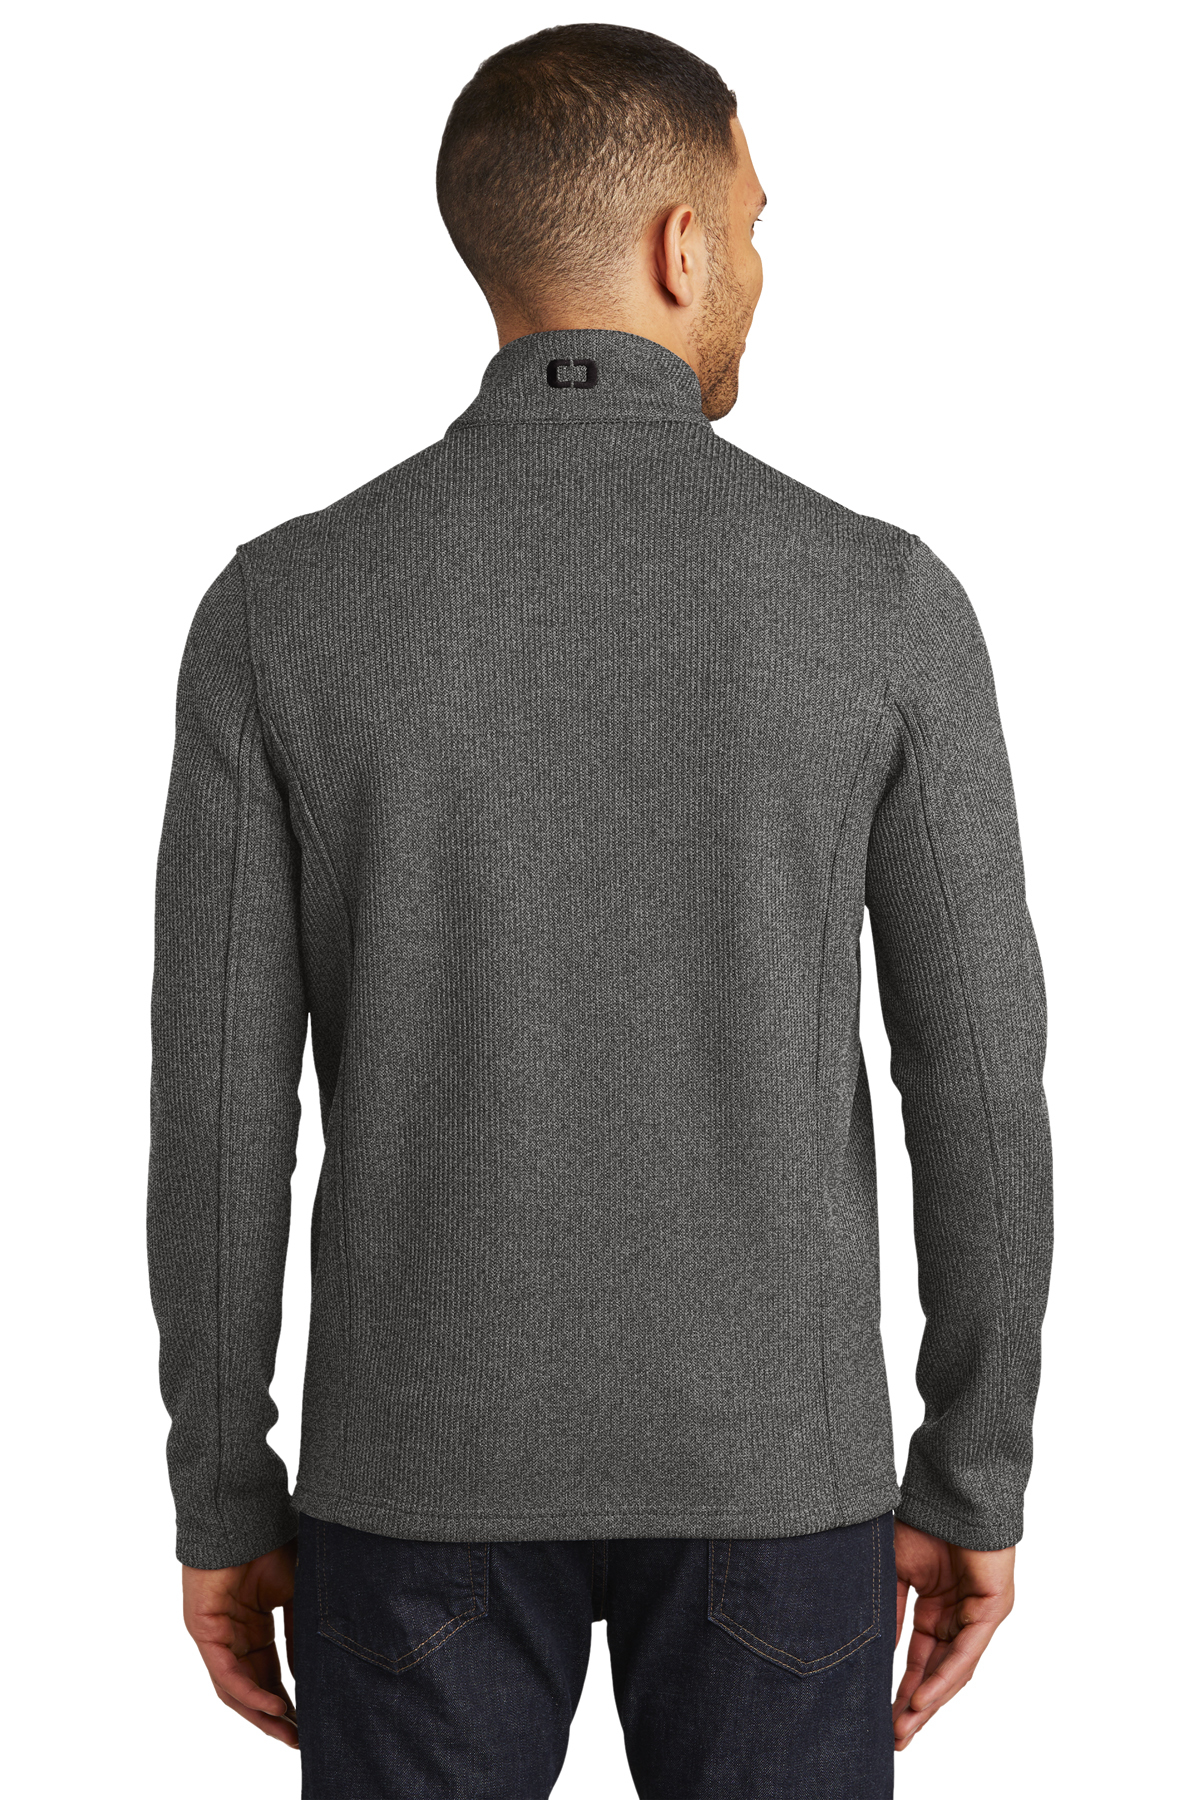 OGIO Grit Fleece Jacket | Product | SanMar